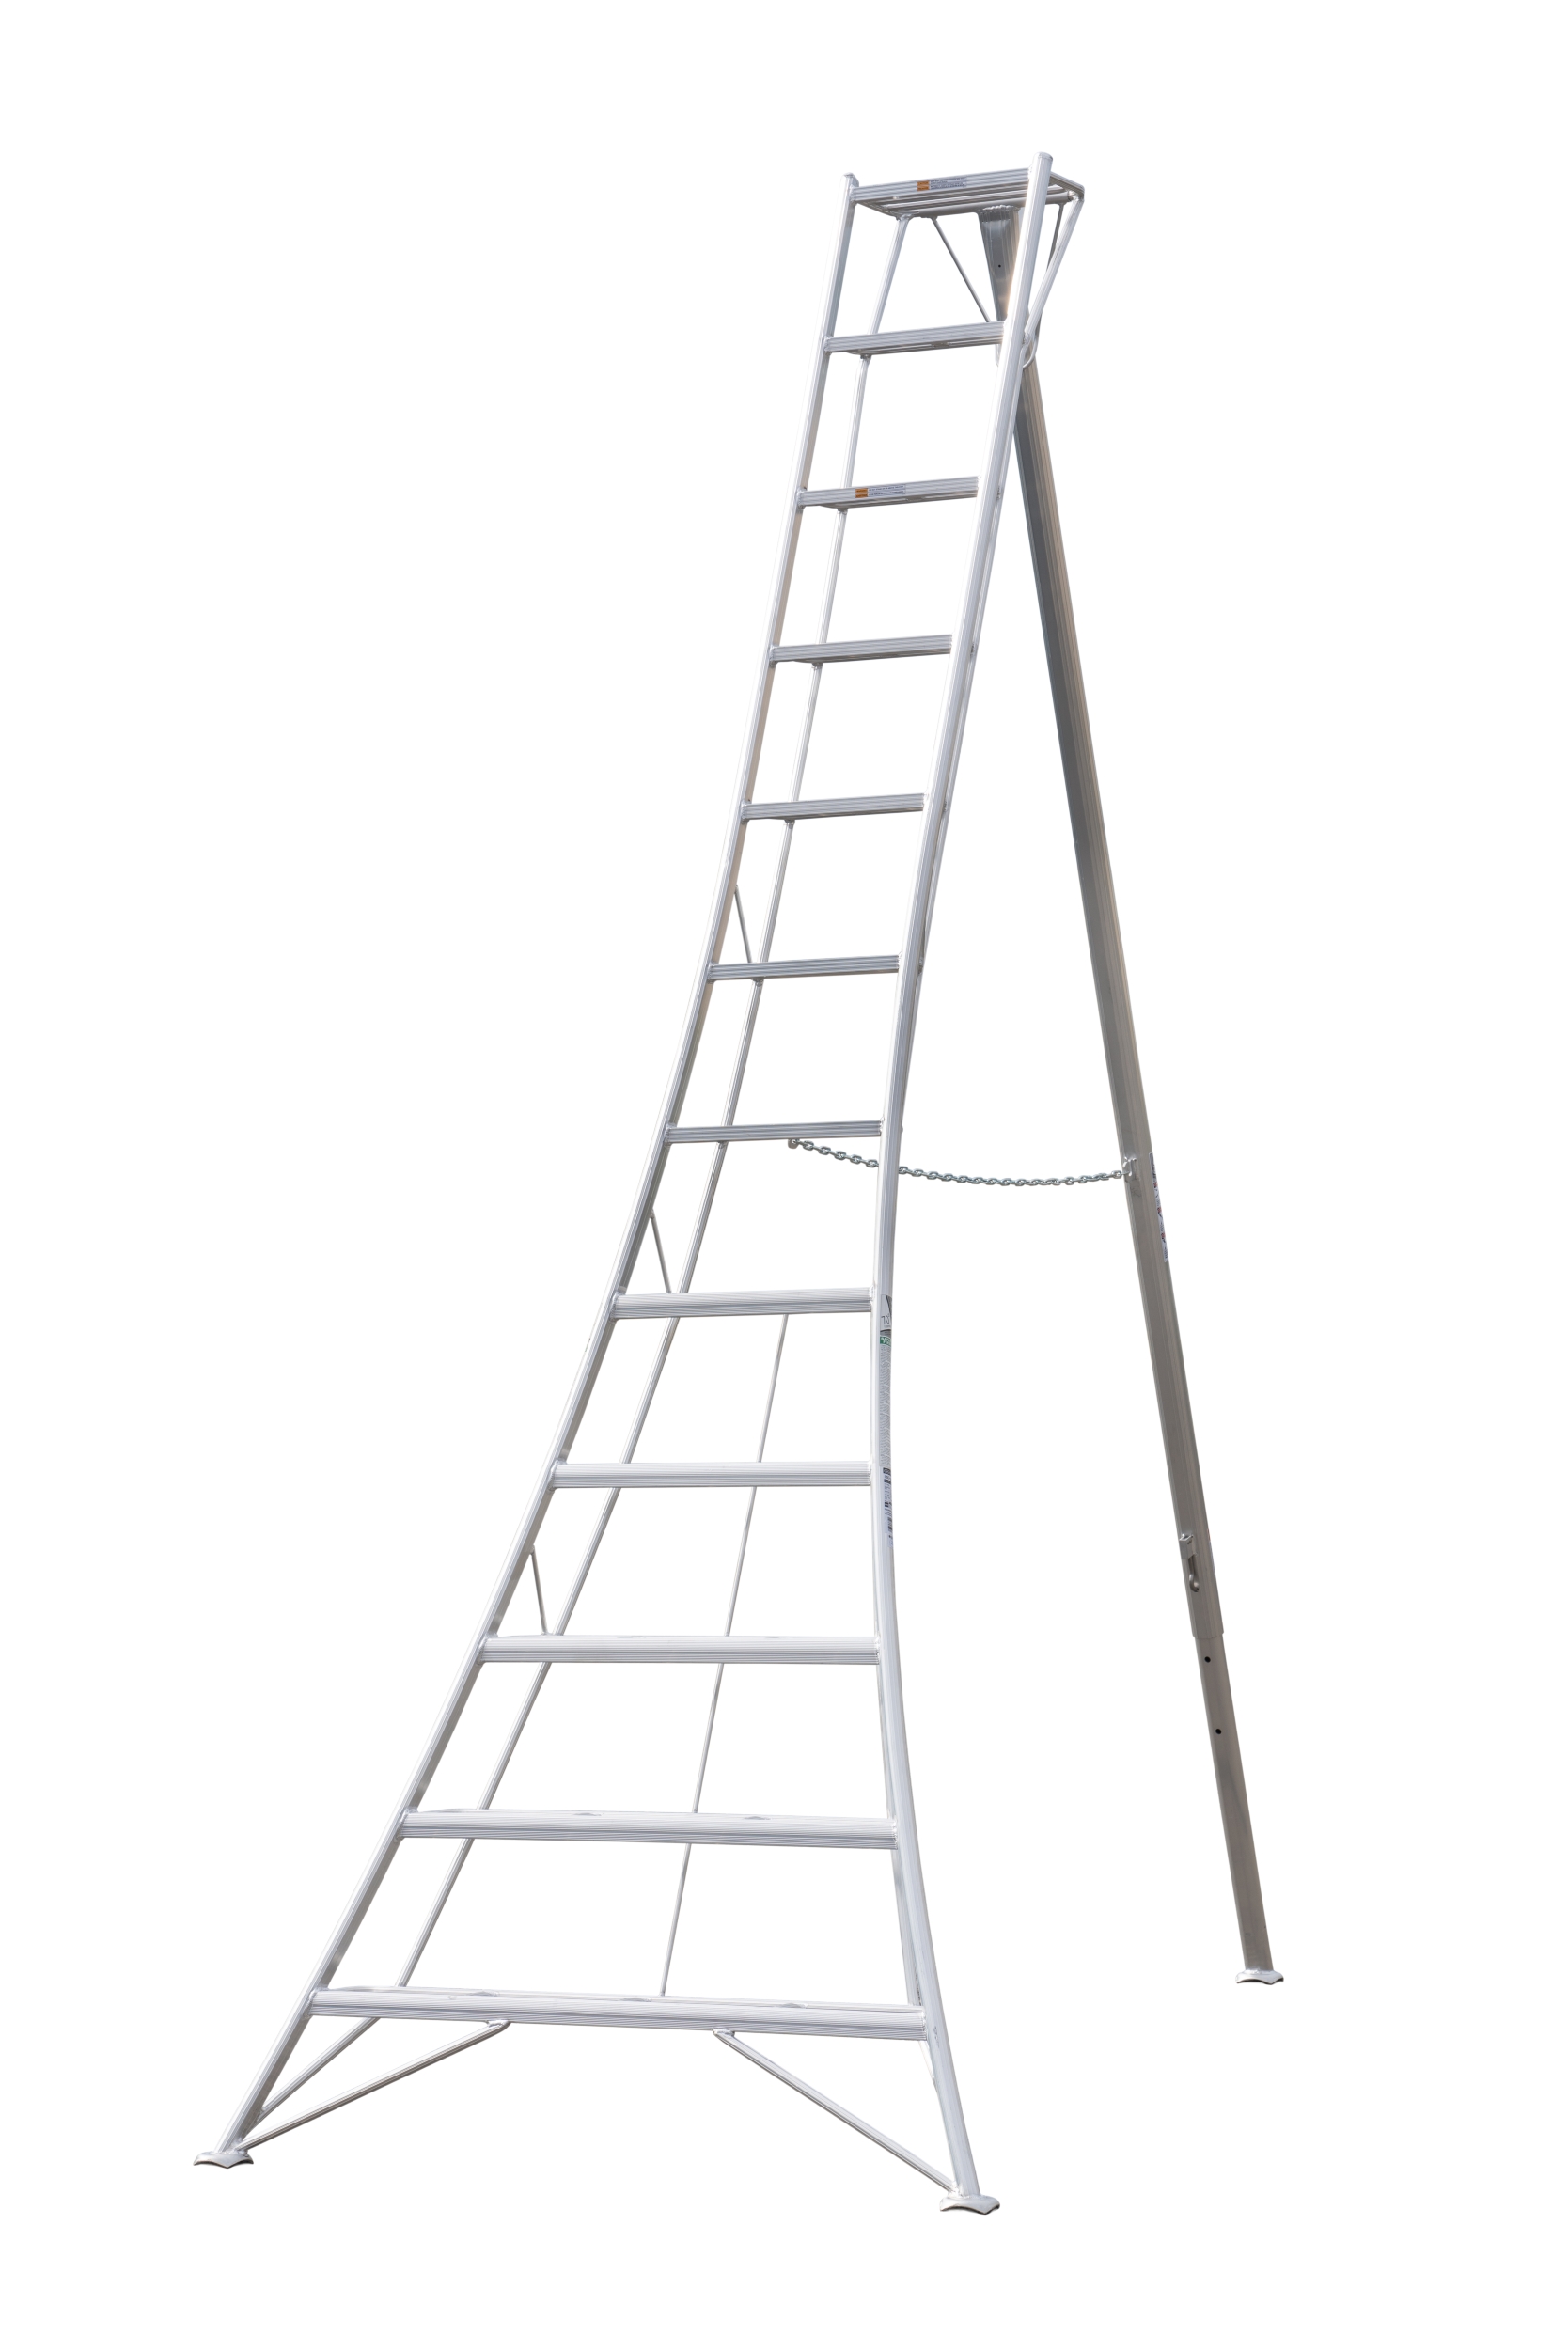 Ladder 8 ft Standard Tripod 24 lbs Hasegawa